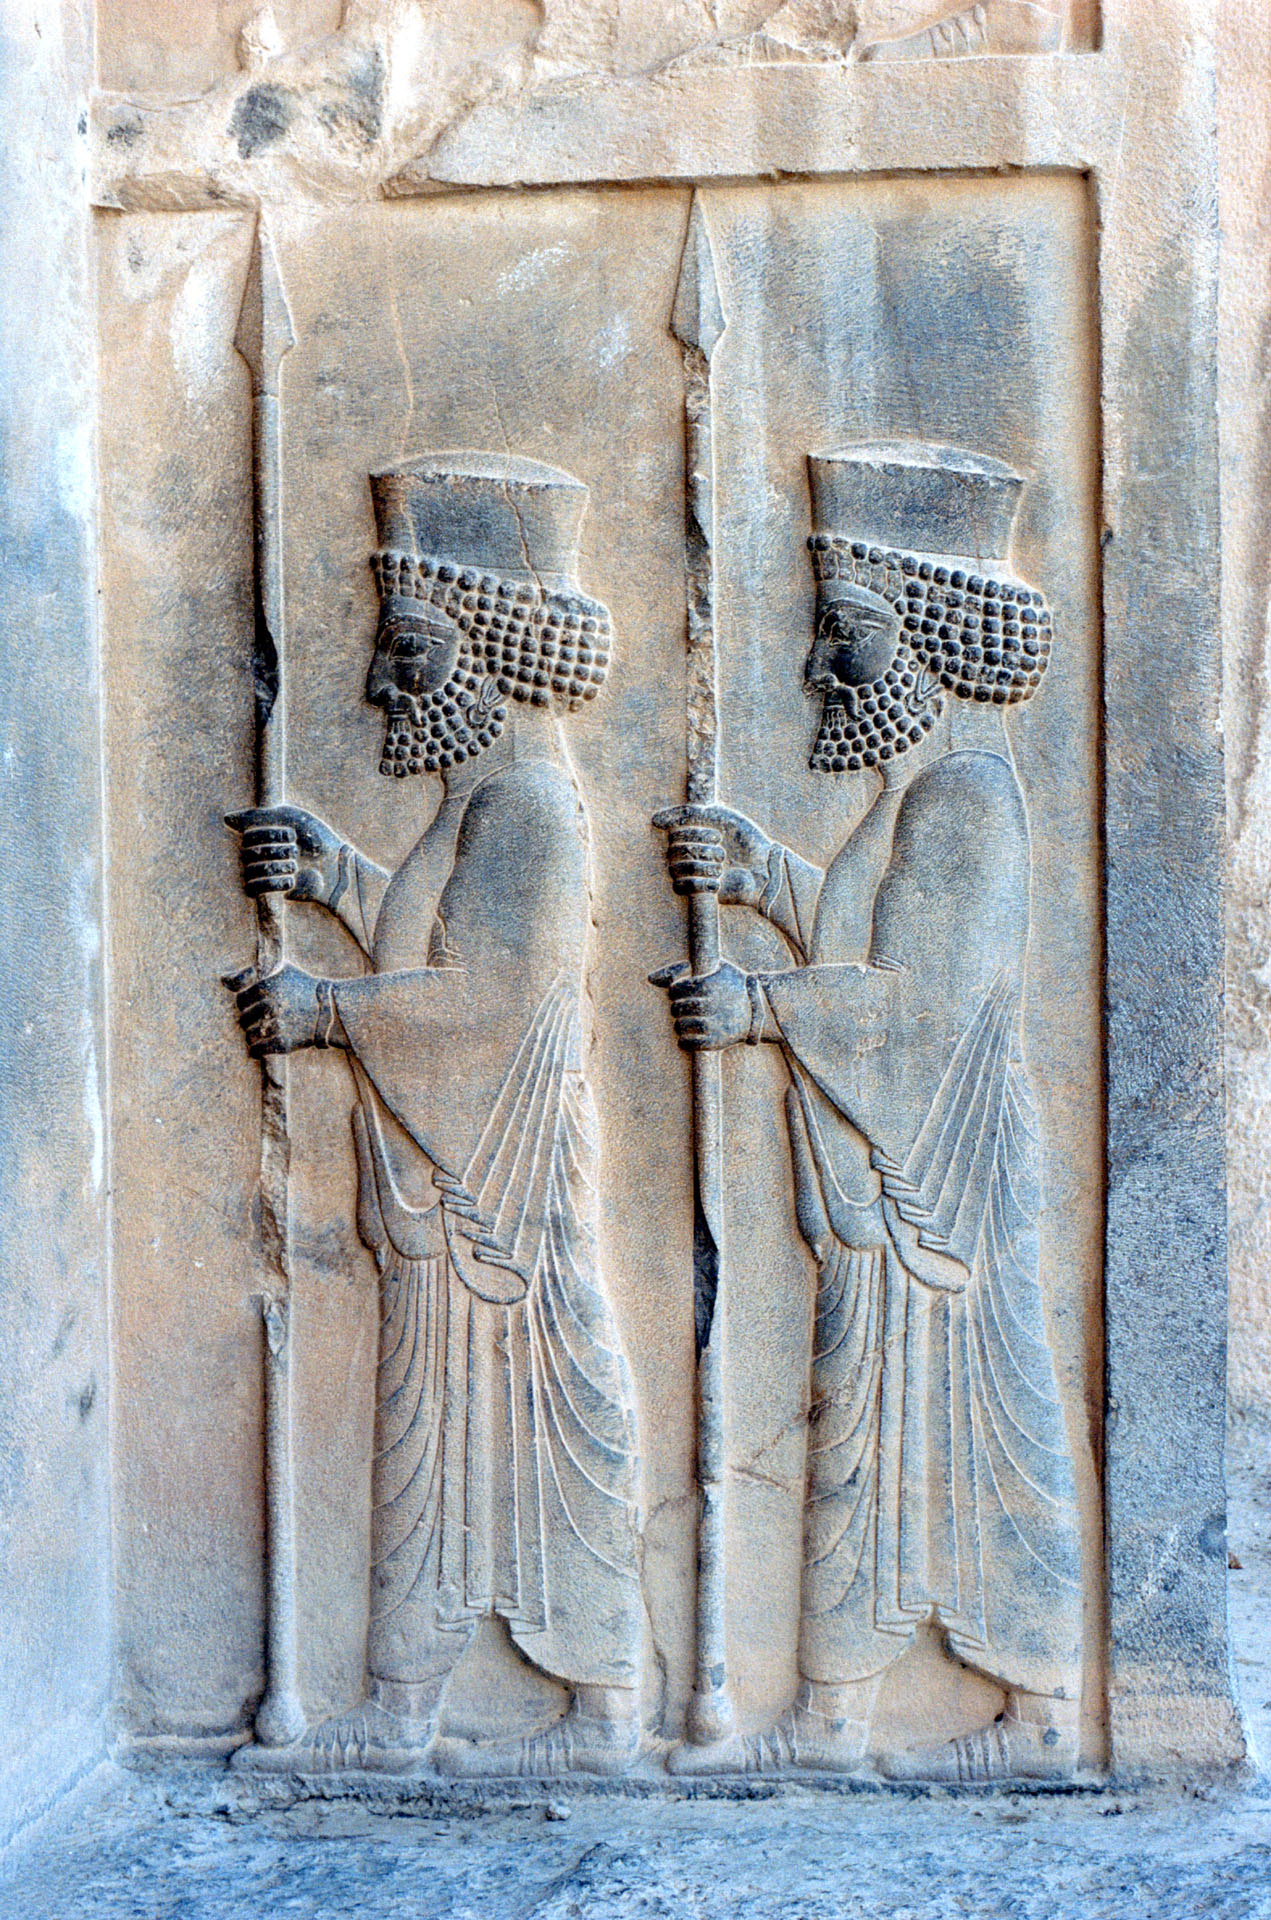 Persepolis - Iran